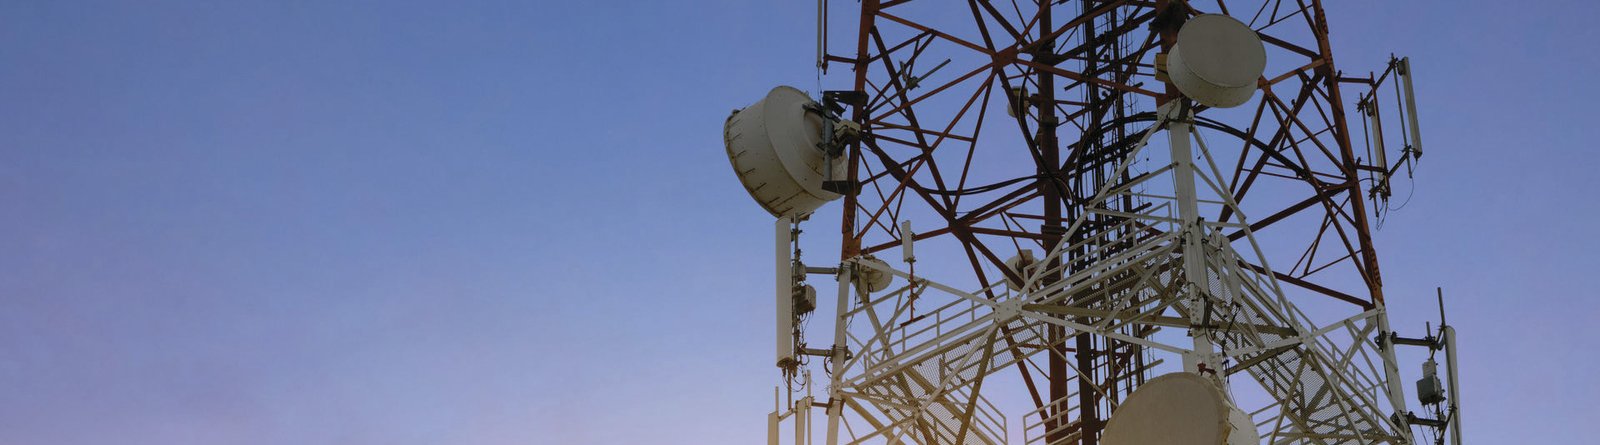 implantação torre radio comunicador